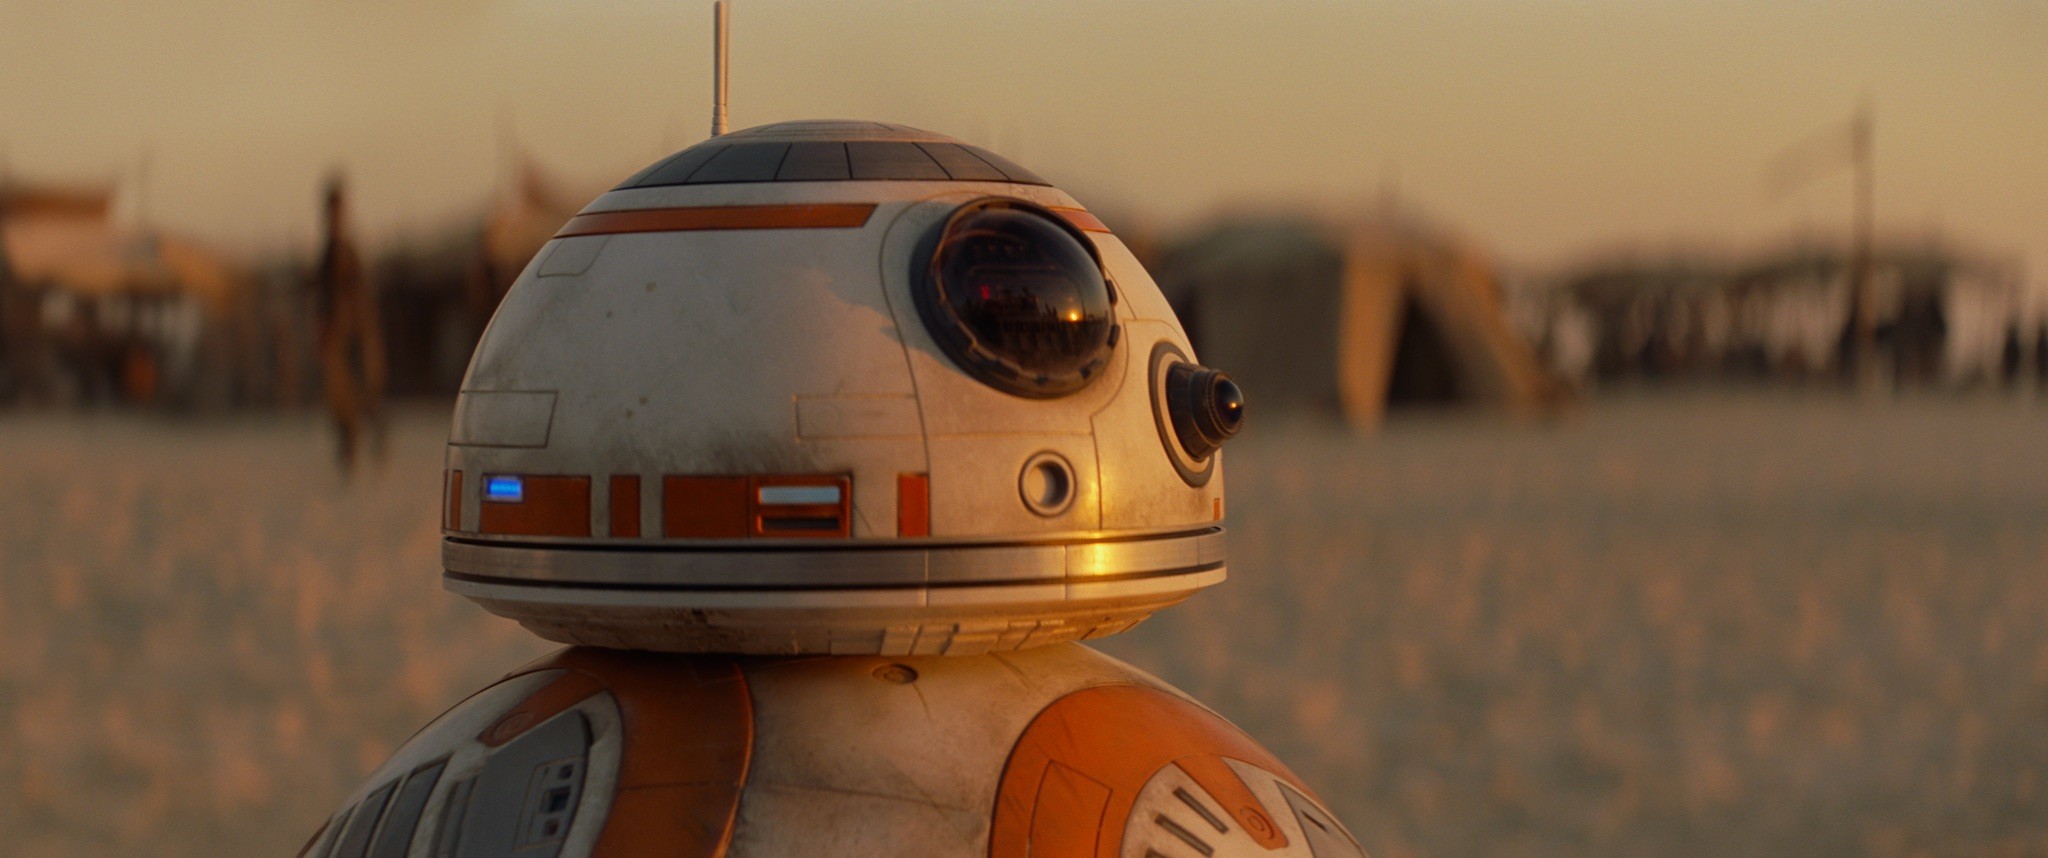 Star Wars Jakku Robot BB 8 Star Wars Droids Screen Shot Movies Star Wars The Force Awakens Science F 2048x858